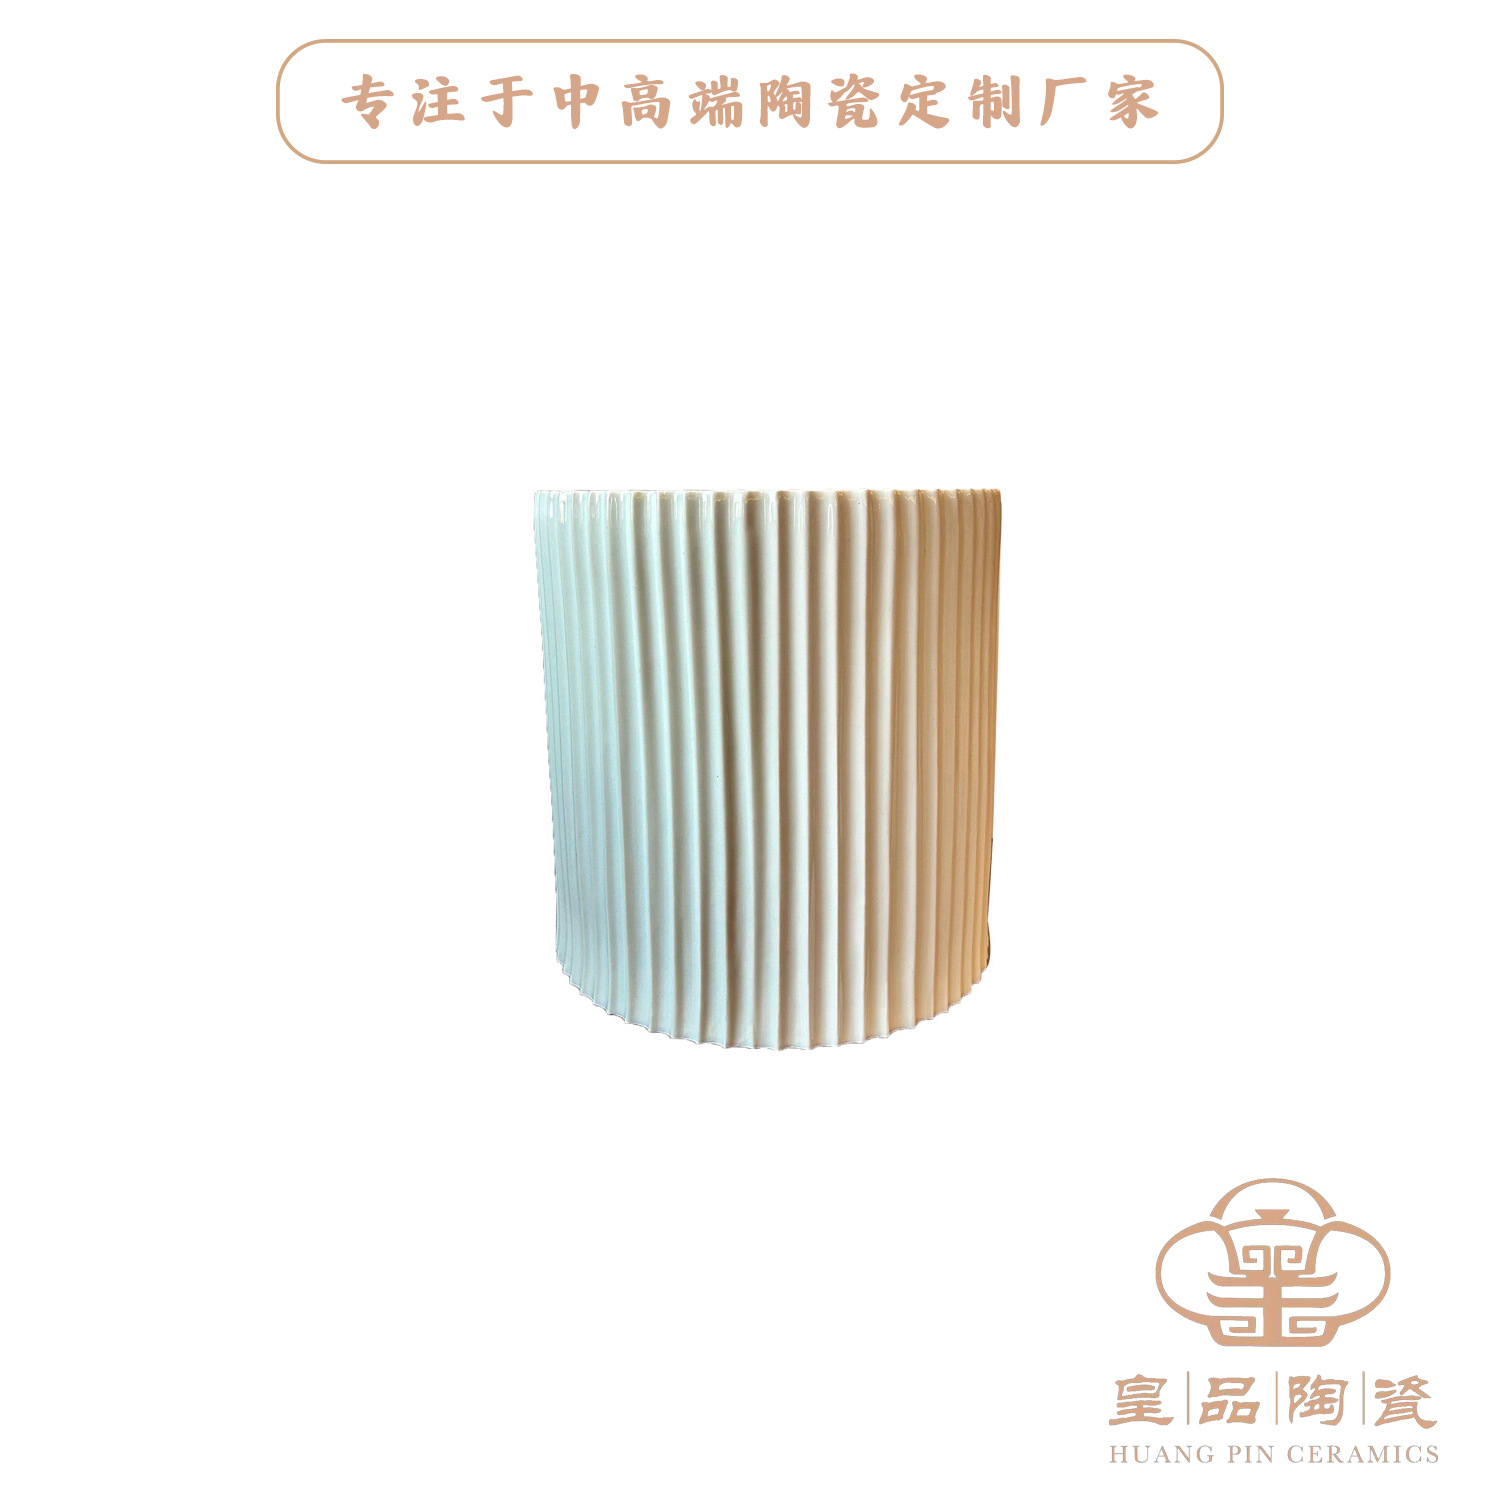 景德镇陶瓷器灯具厂家 样板间设计师款台灯灯罩造型竖纹灯具定制